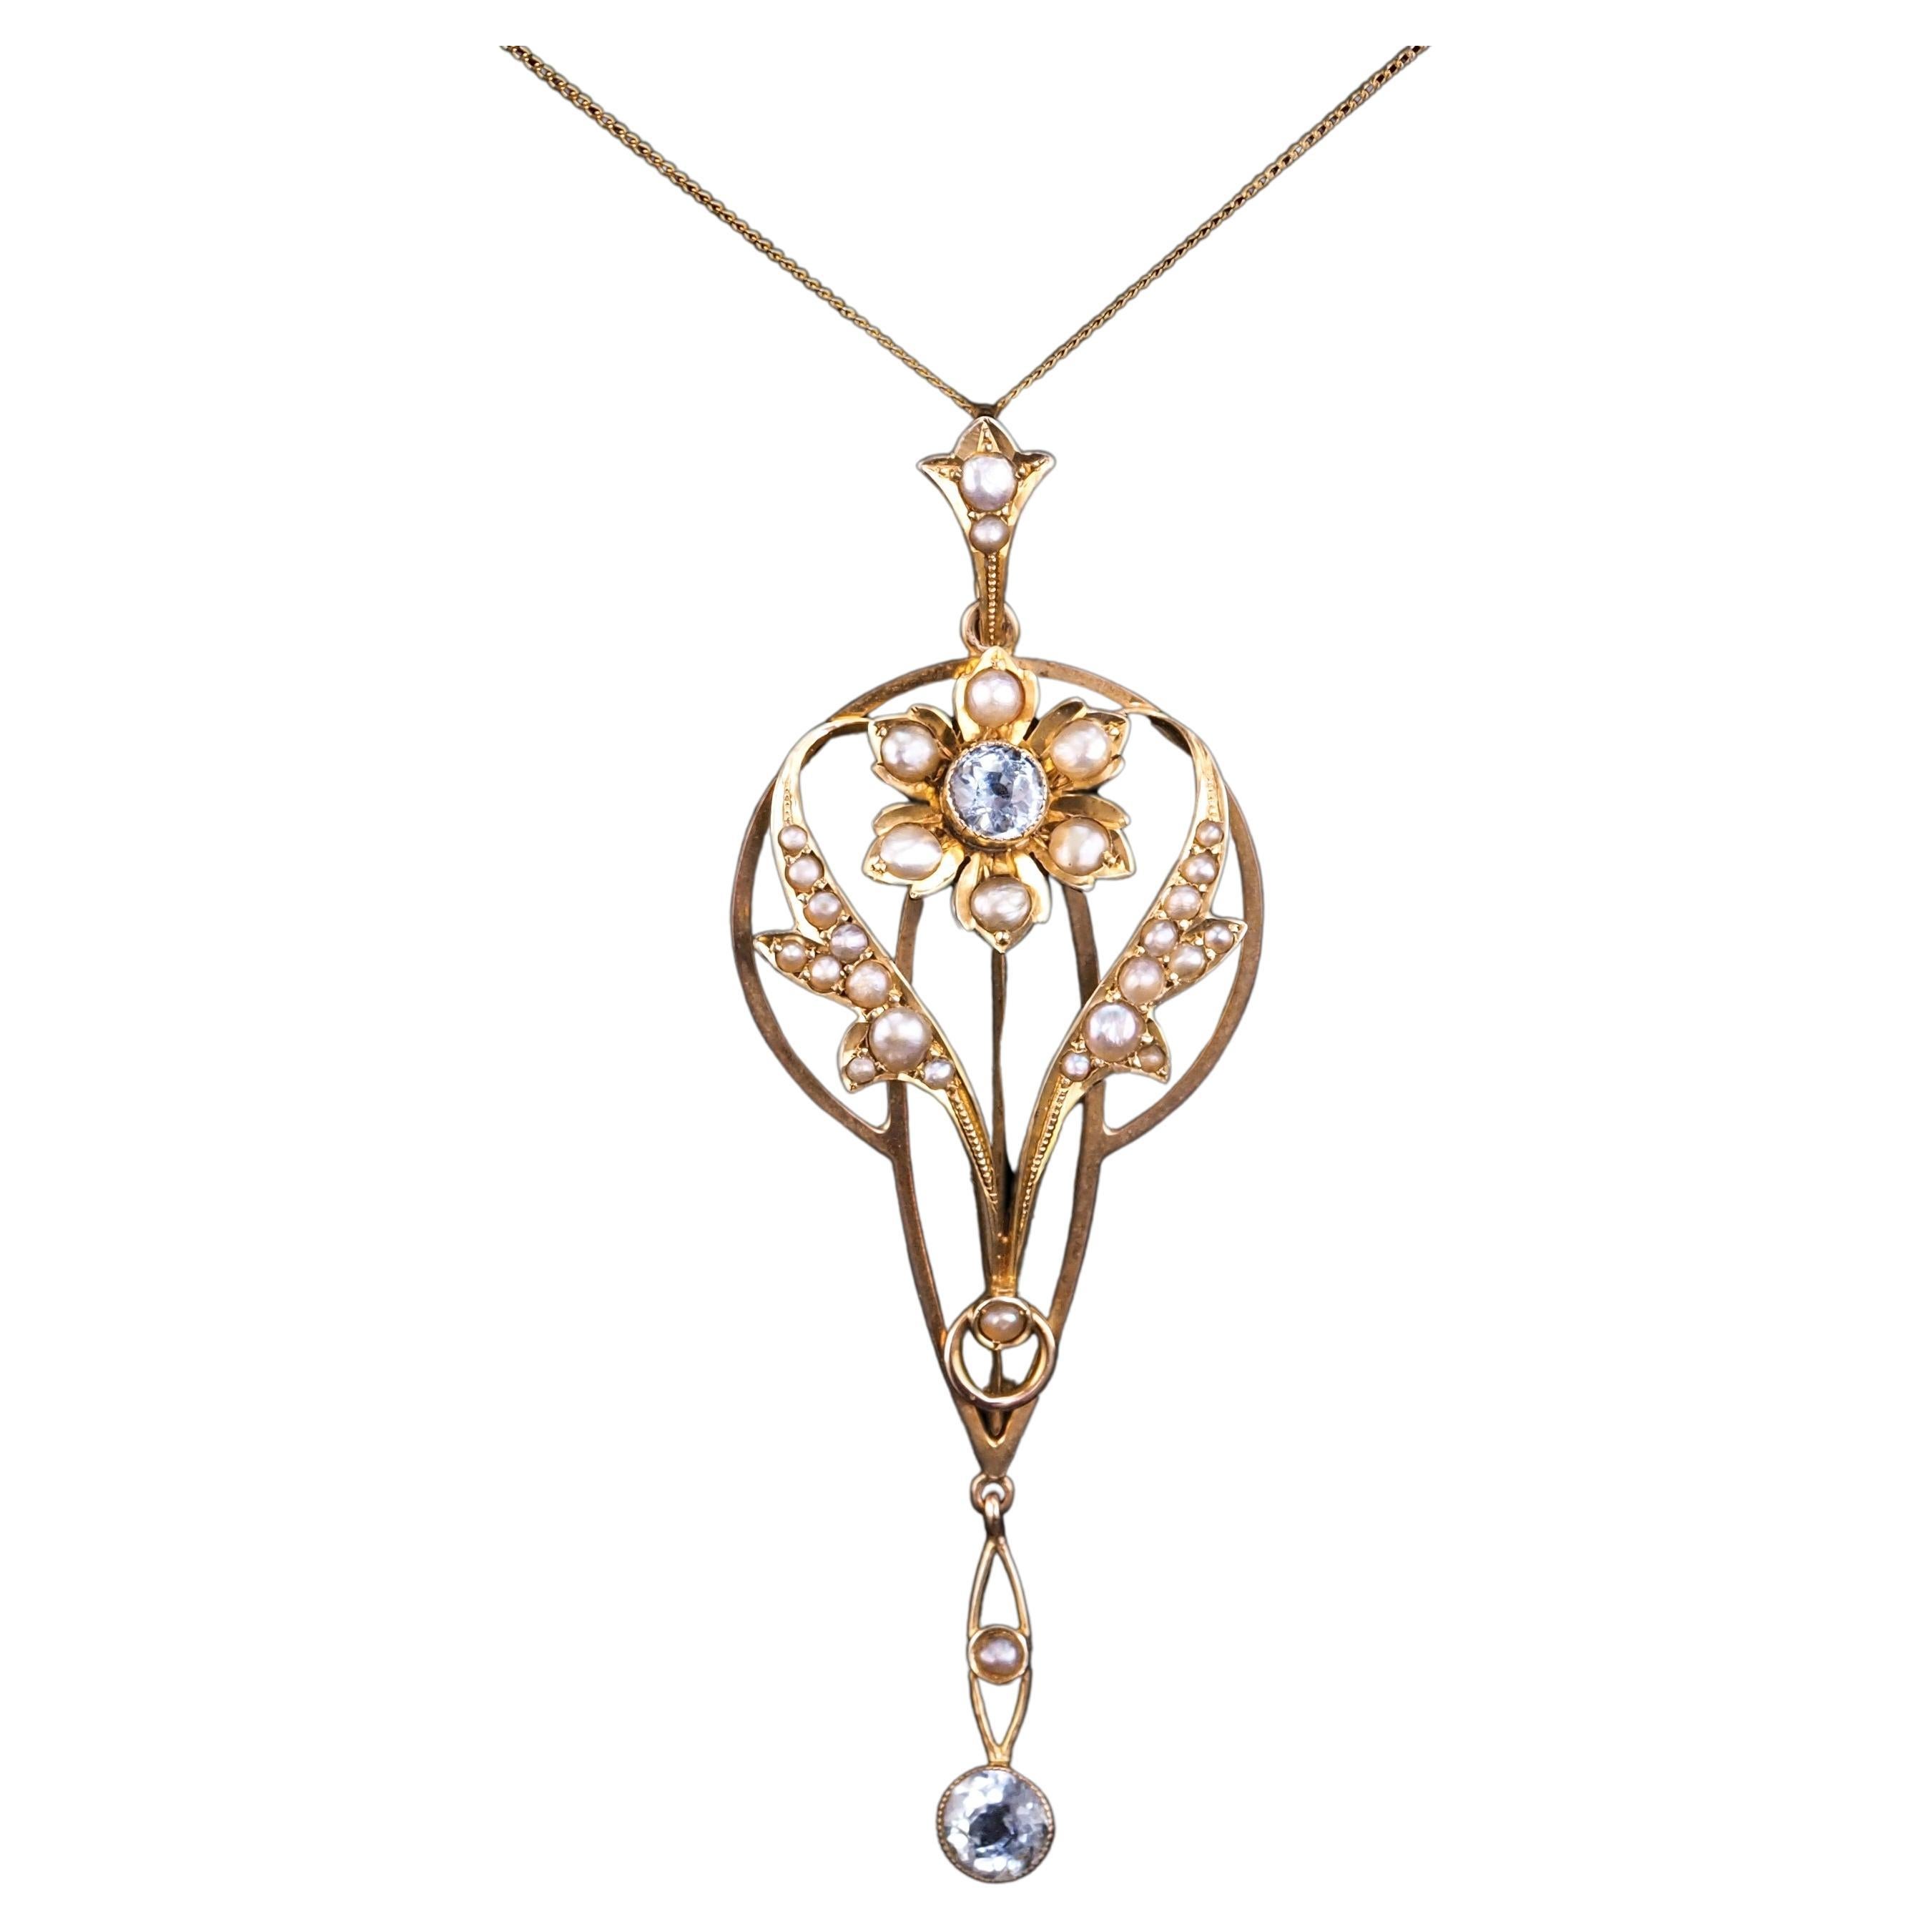 Antique Aquamarine Pendant Necklace Seed Pearls 9K Gold Art Nouveau c.1905